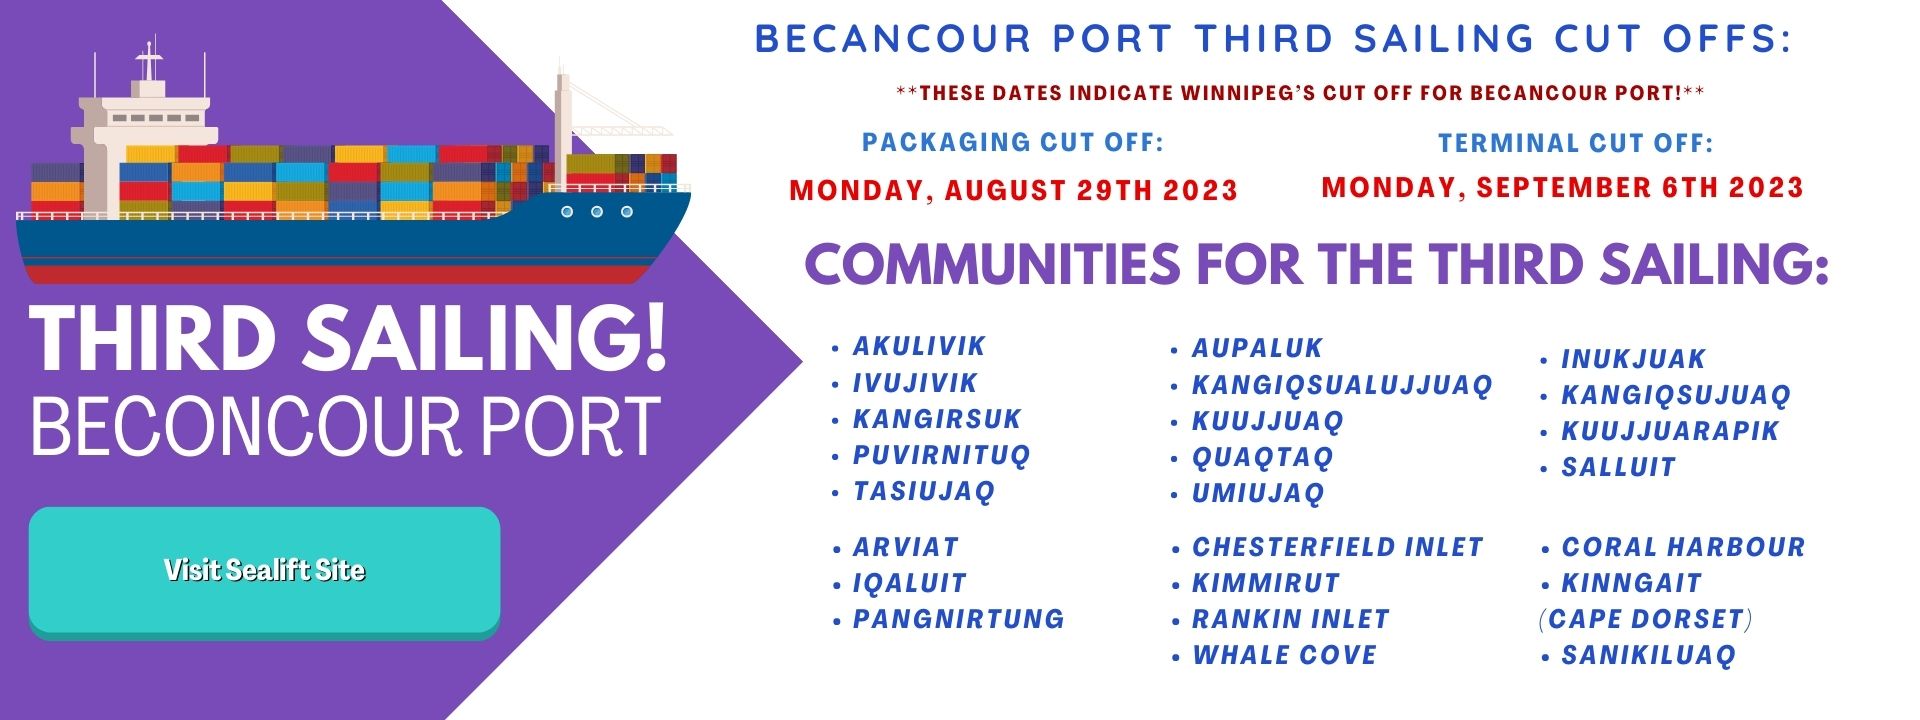 Third Sailing! Beconcour Port